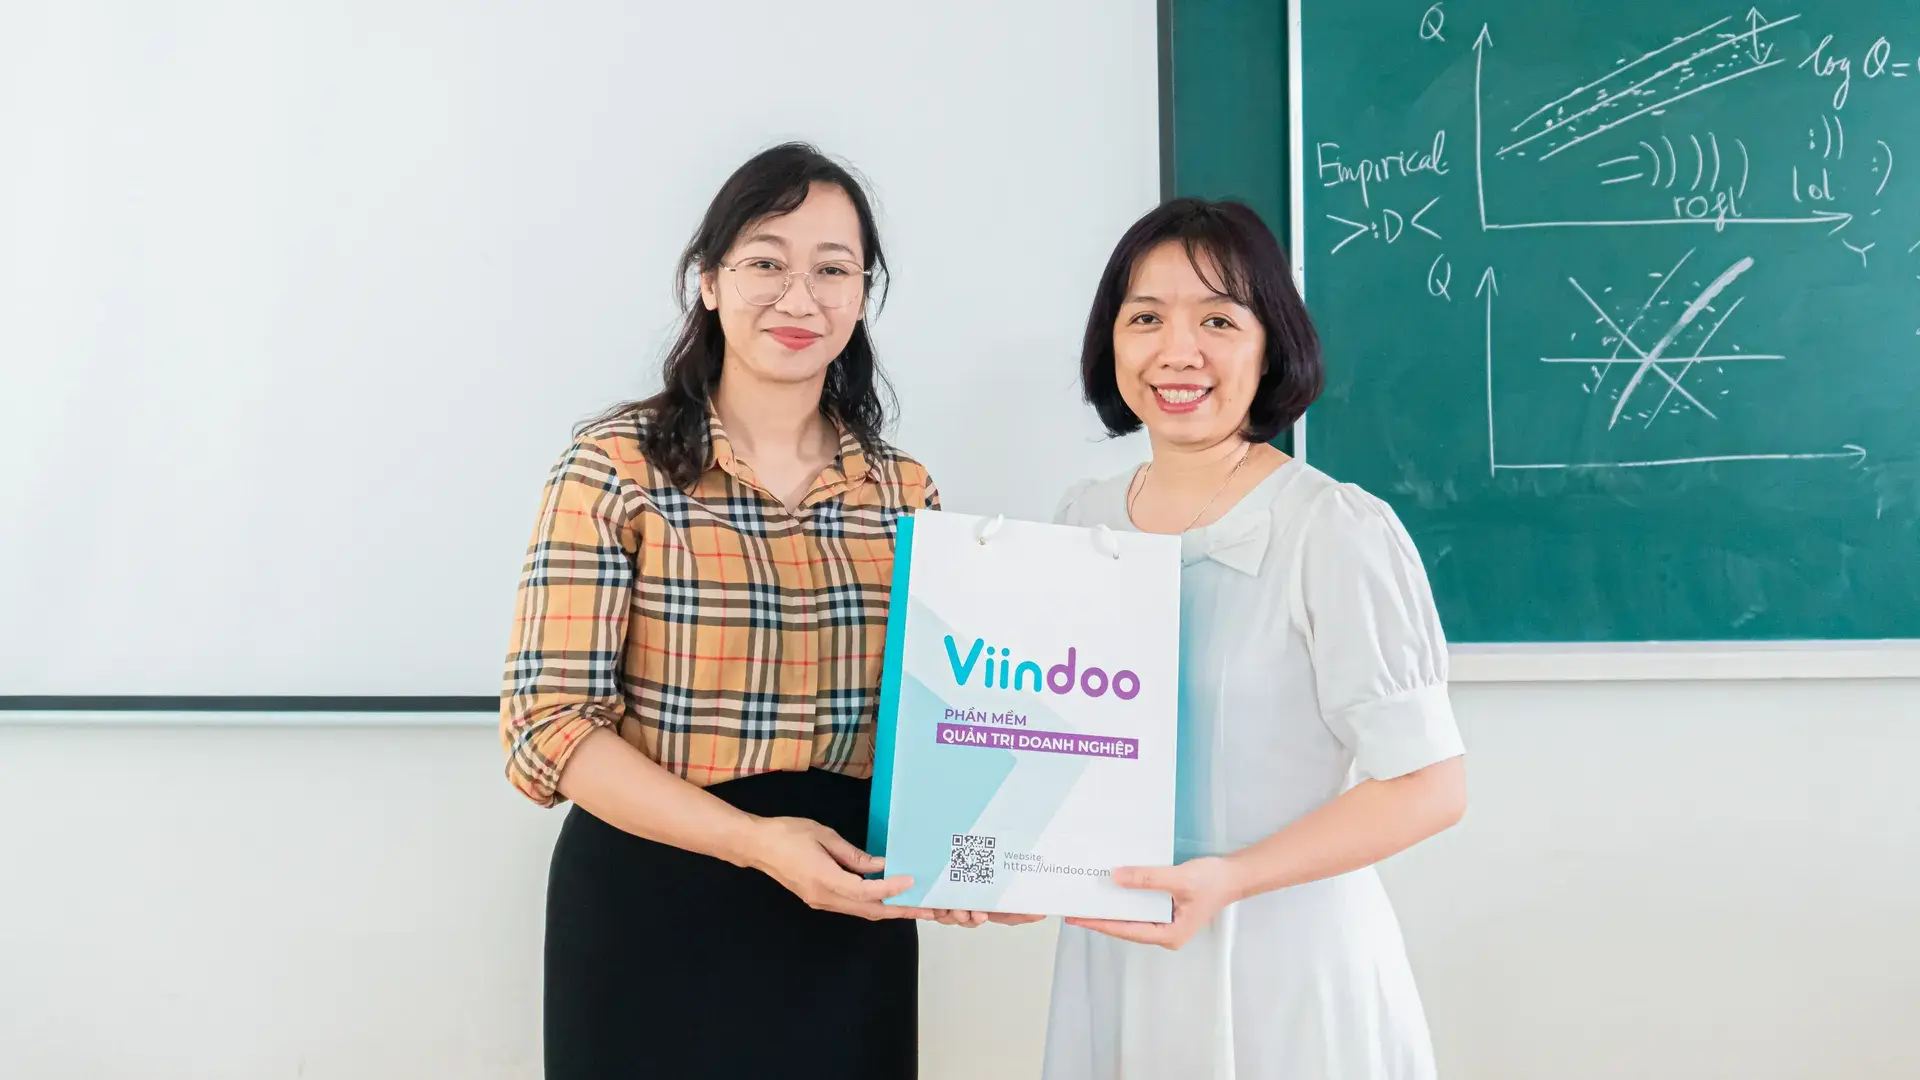 Viindoo - Ứng dụng Công nghệ trong Nhà máy Sản xuất dành cho Sinh viên FTU